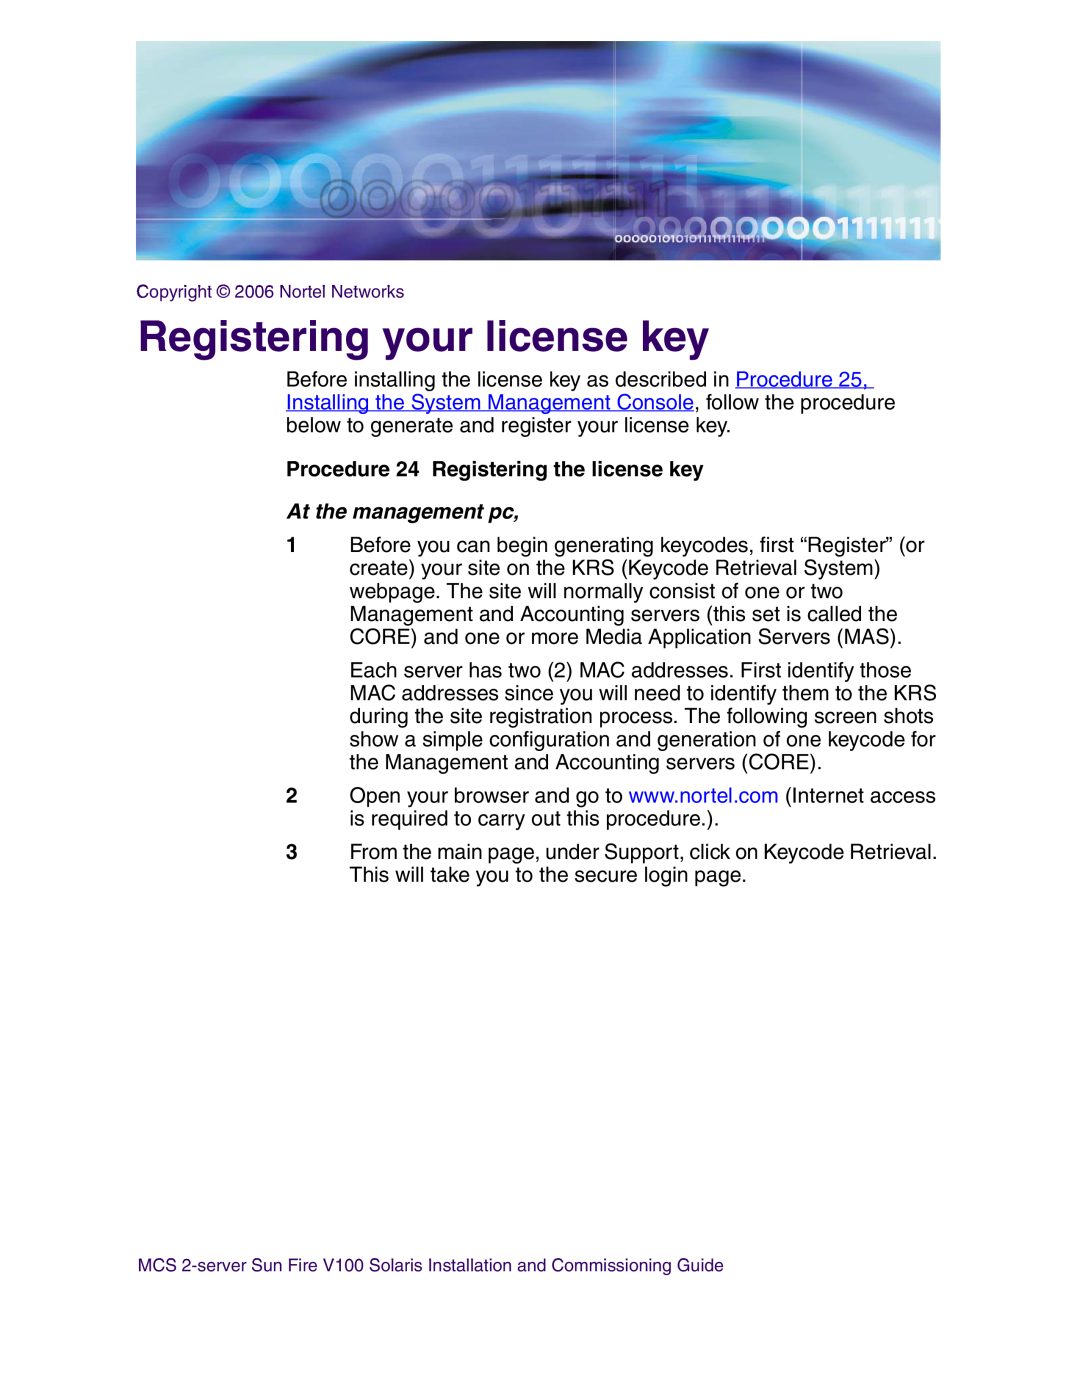 Nortel Networks V100 manual Registering your license key, Procedure 24 Registering the license key, At the management pc 